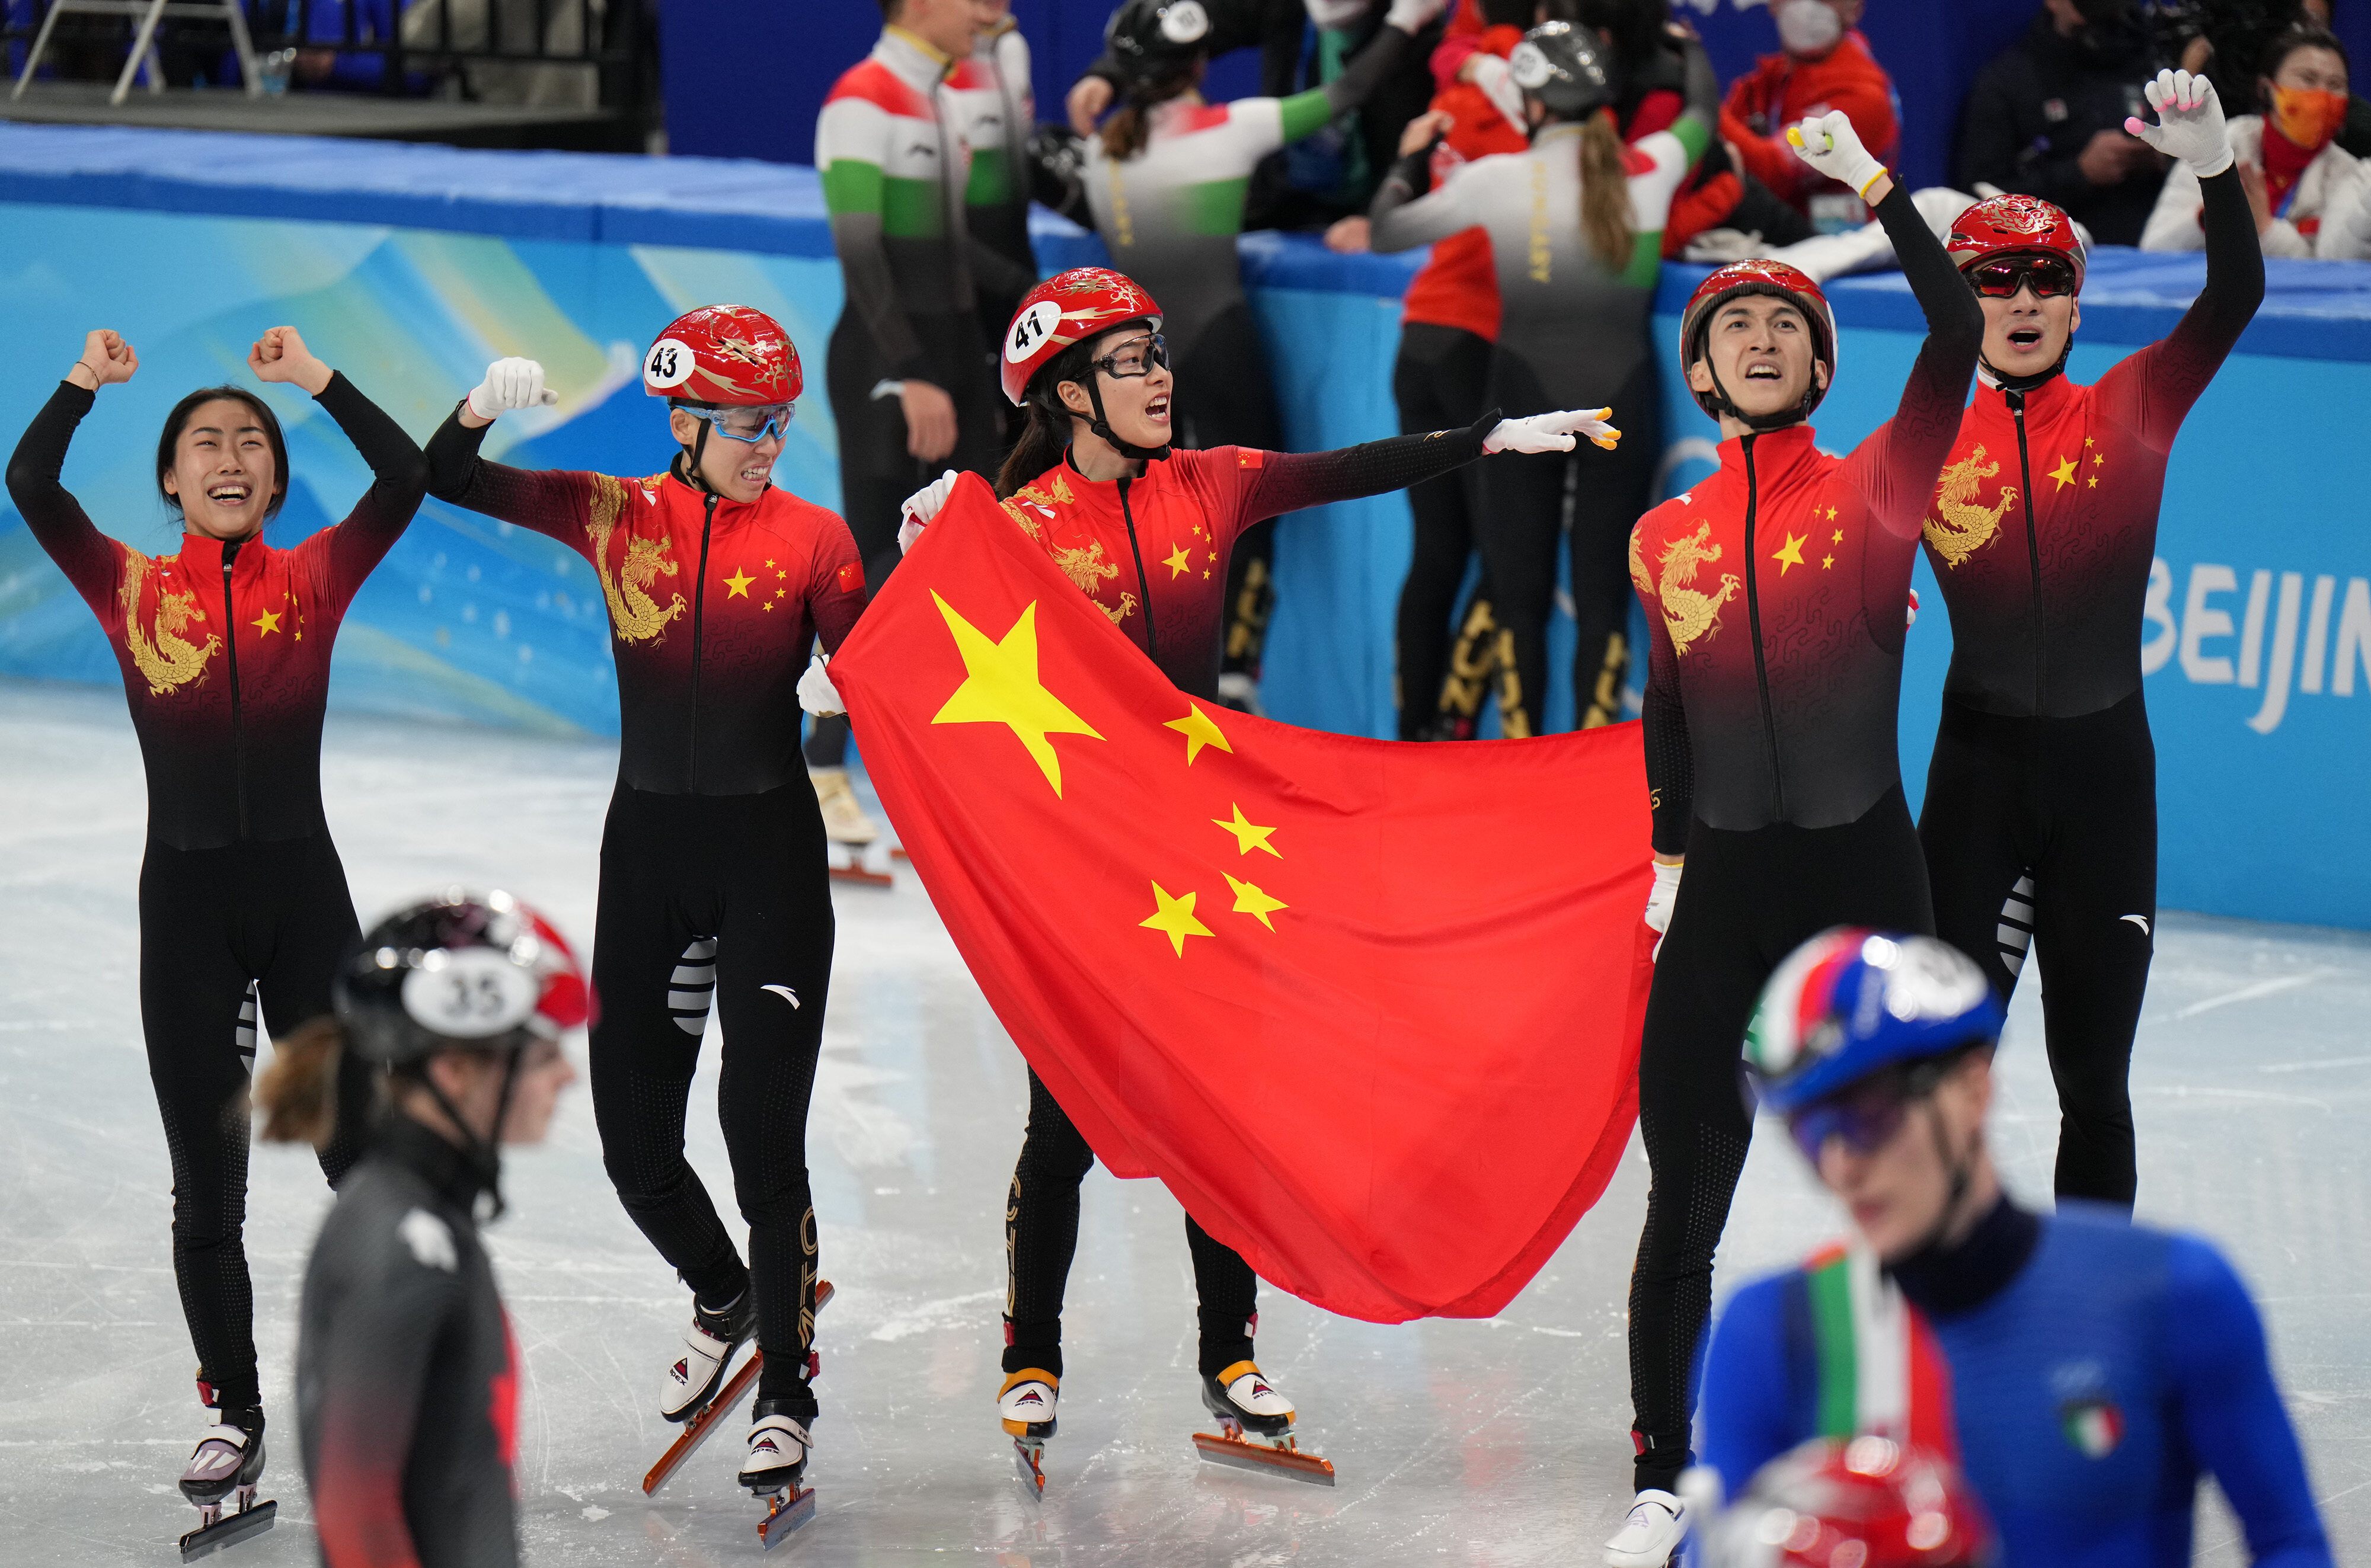 中国队击败对手,夺得中国队北京冬奥首金